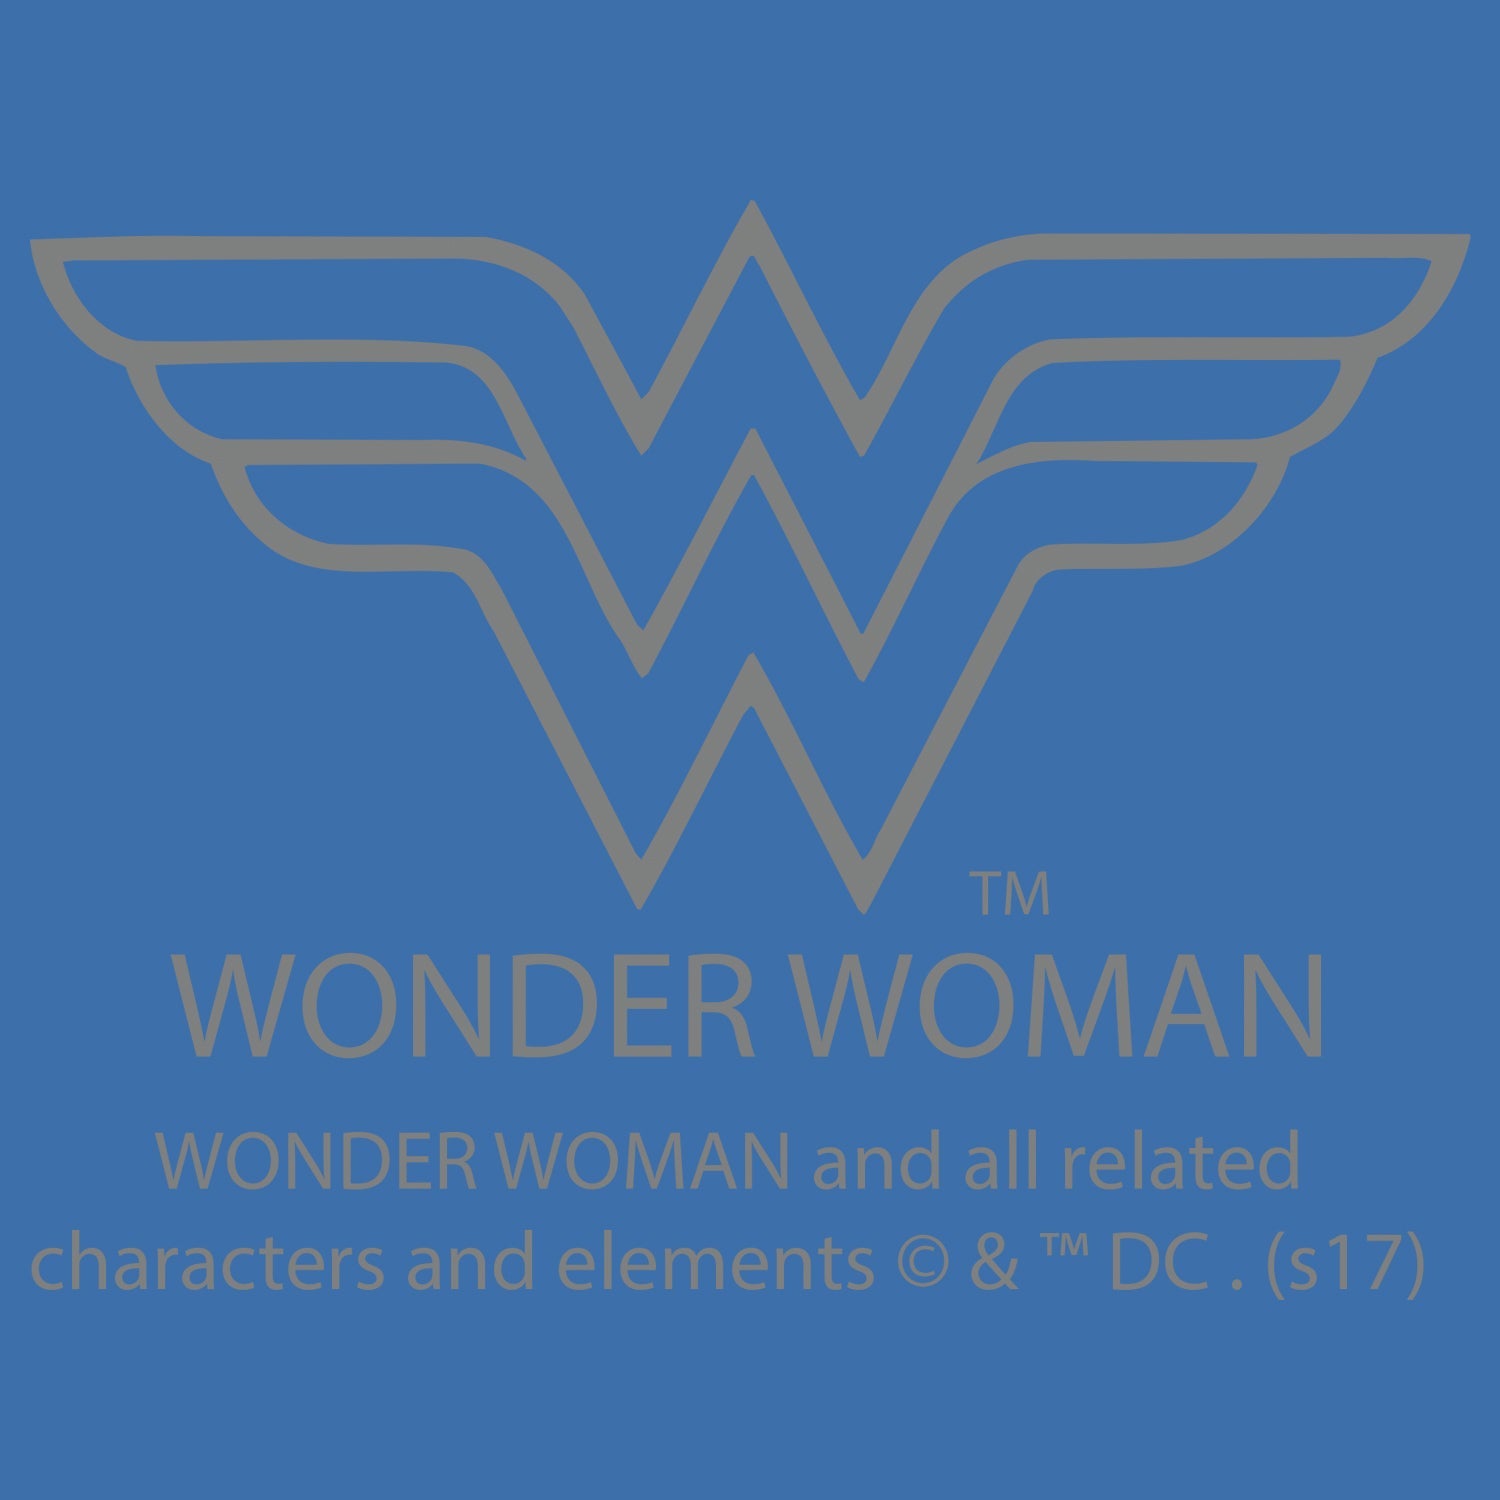 DC Comics Wonder Woman Character Spray Star Official Women's T-shirt ()